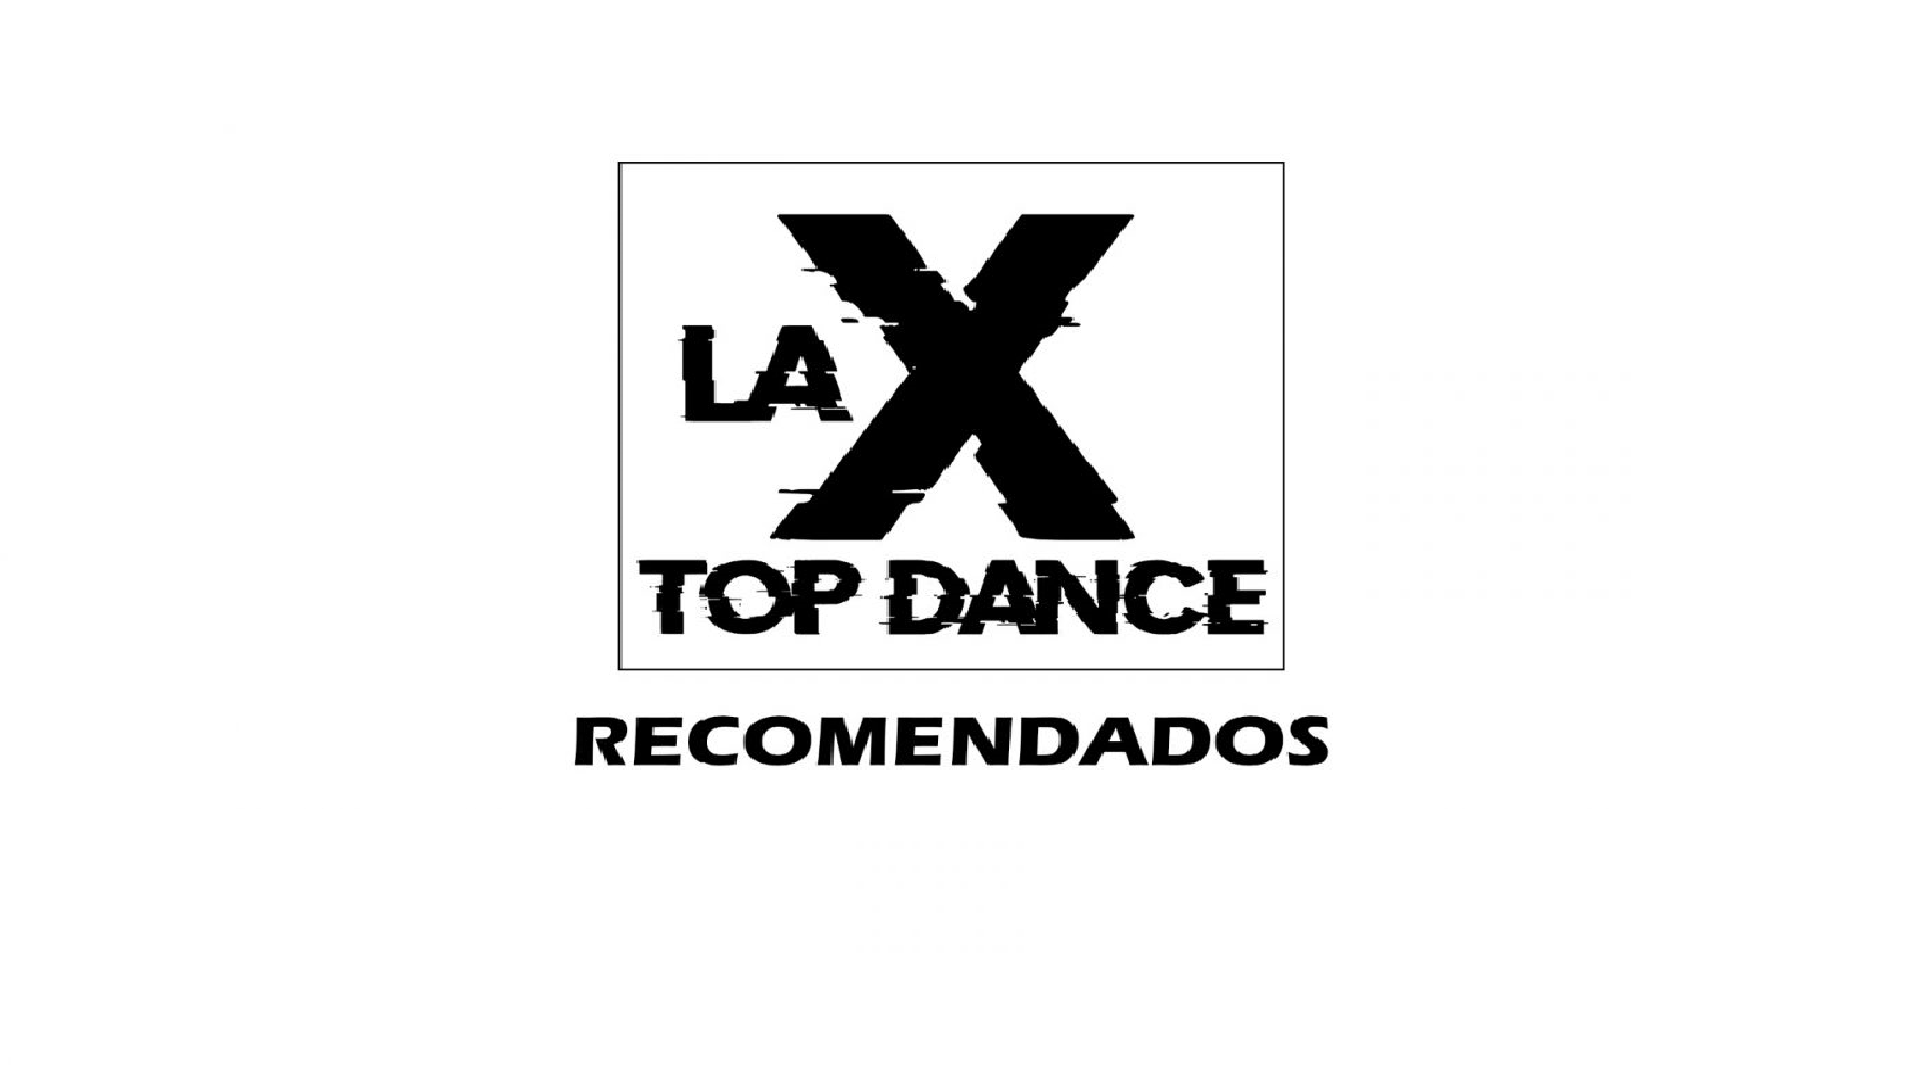 RECOMENDADOS LA X TOP DANCE  19 FEBRERO